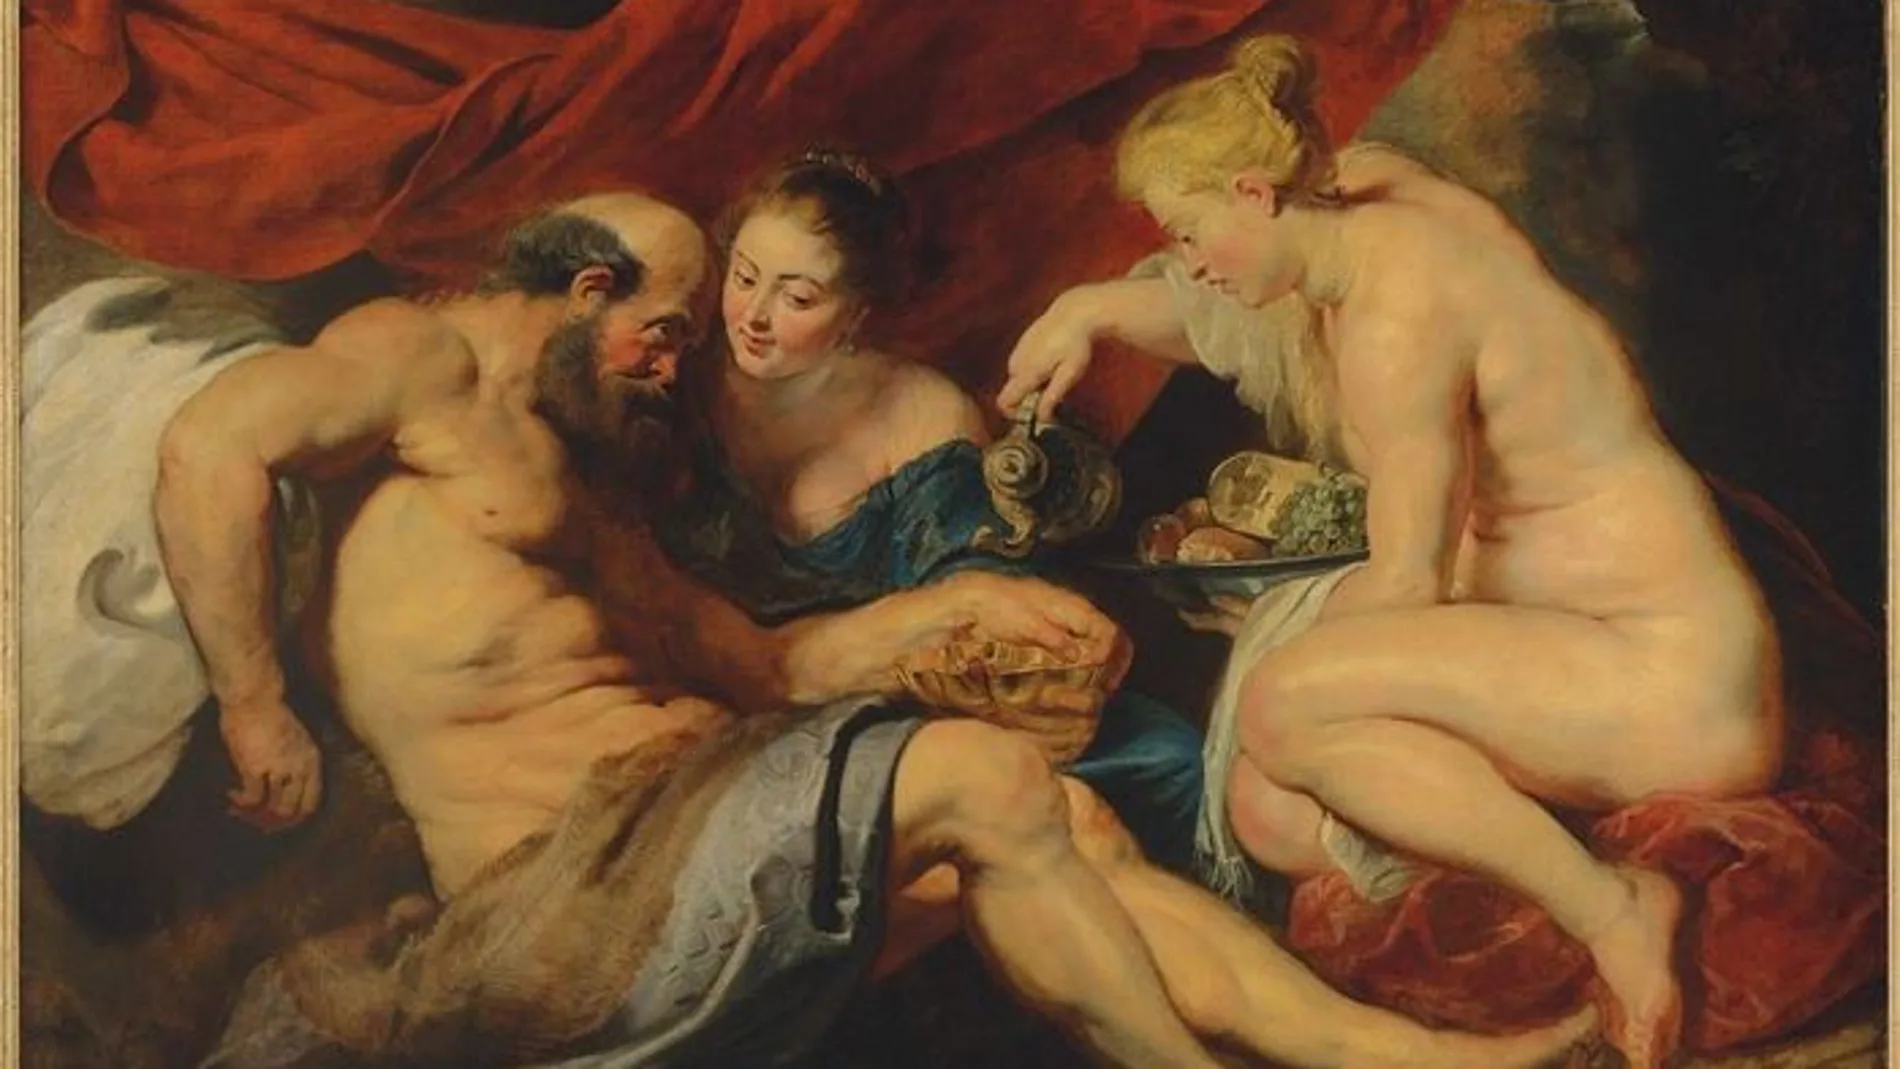 «Lot y sus hijas», del pintor Peter Paul Rubens